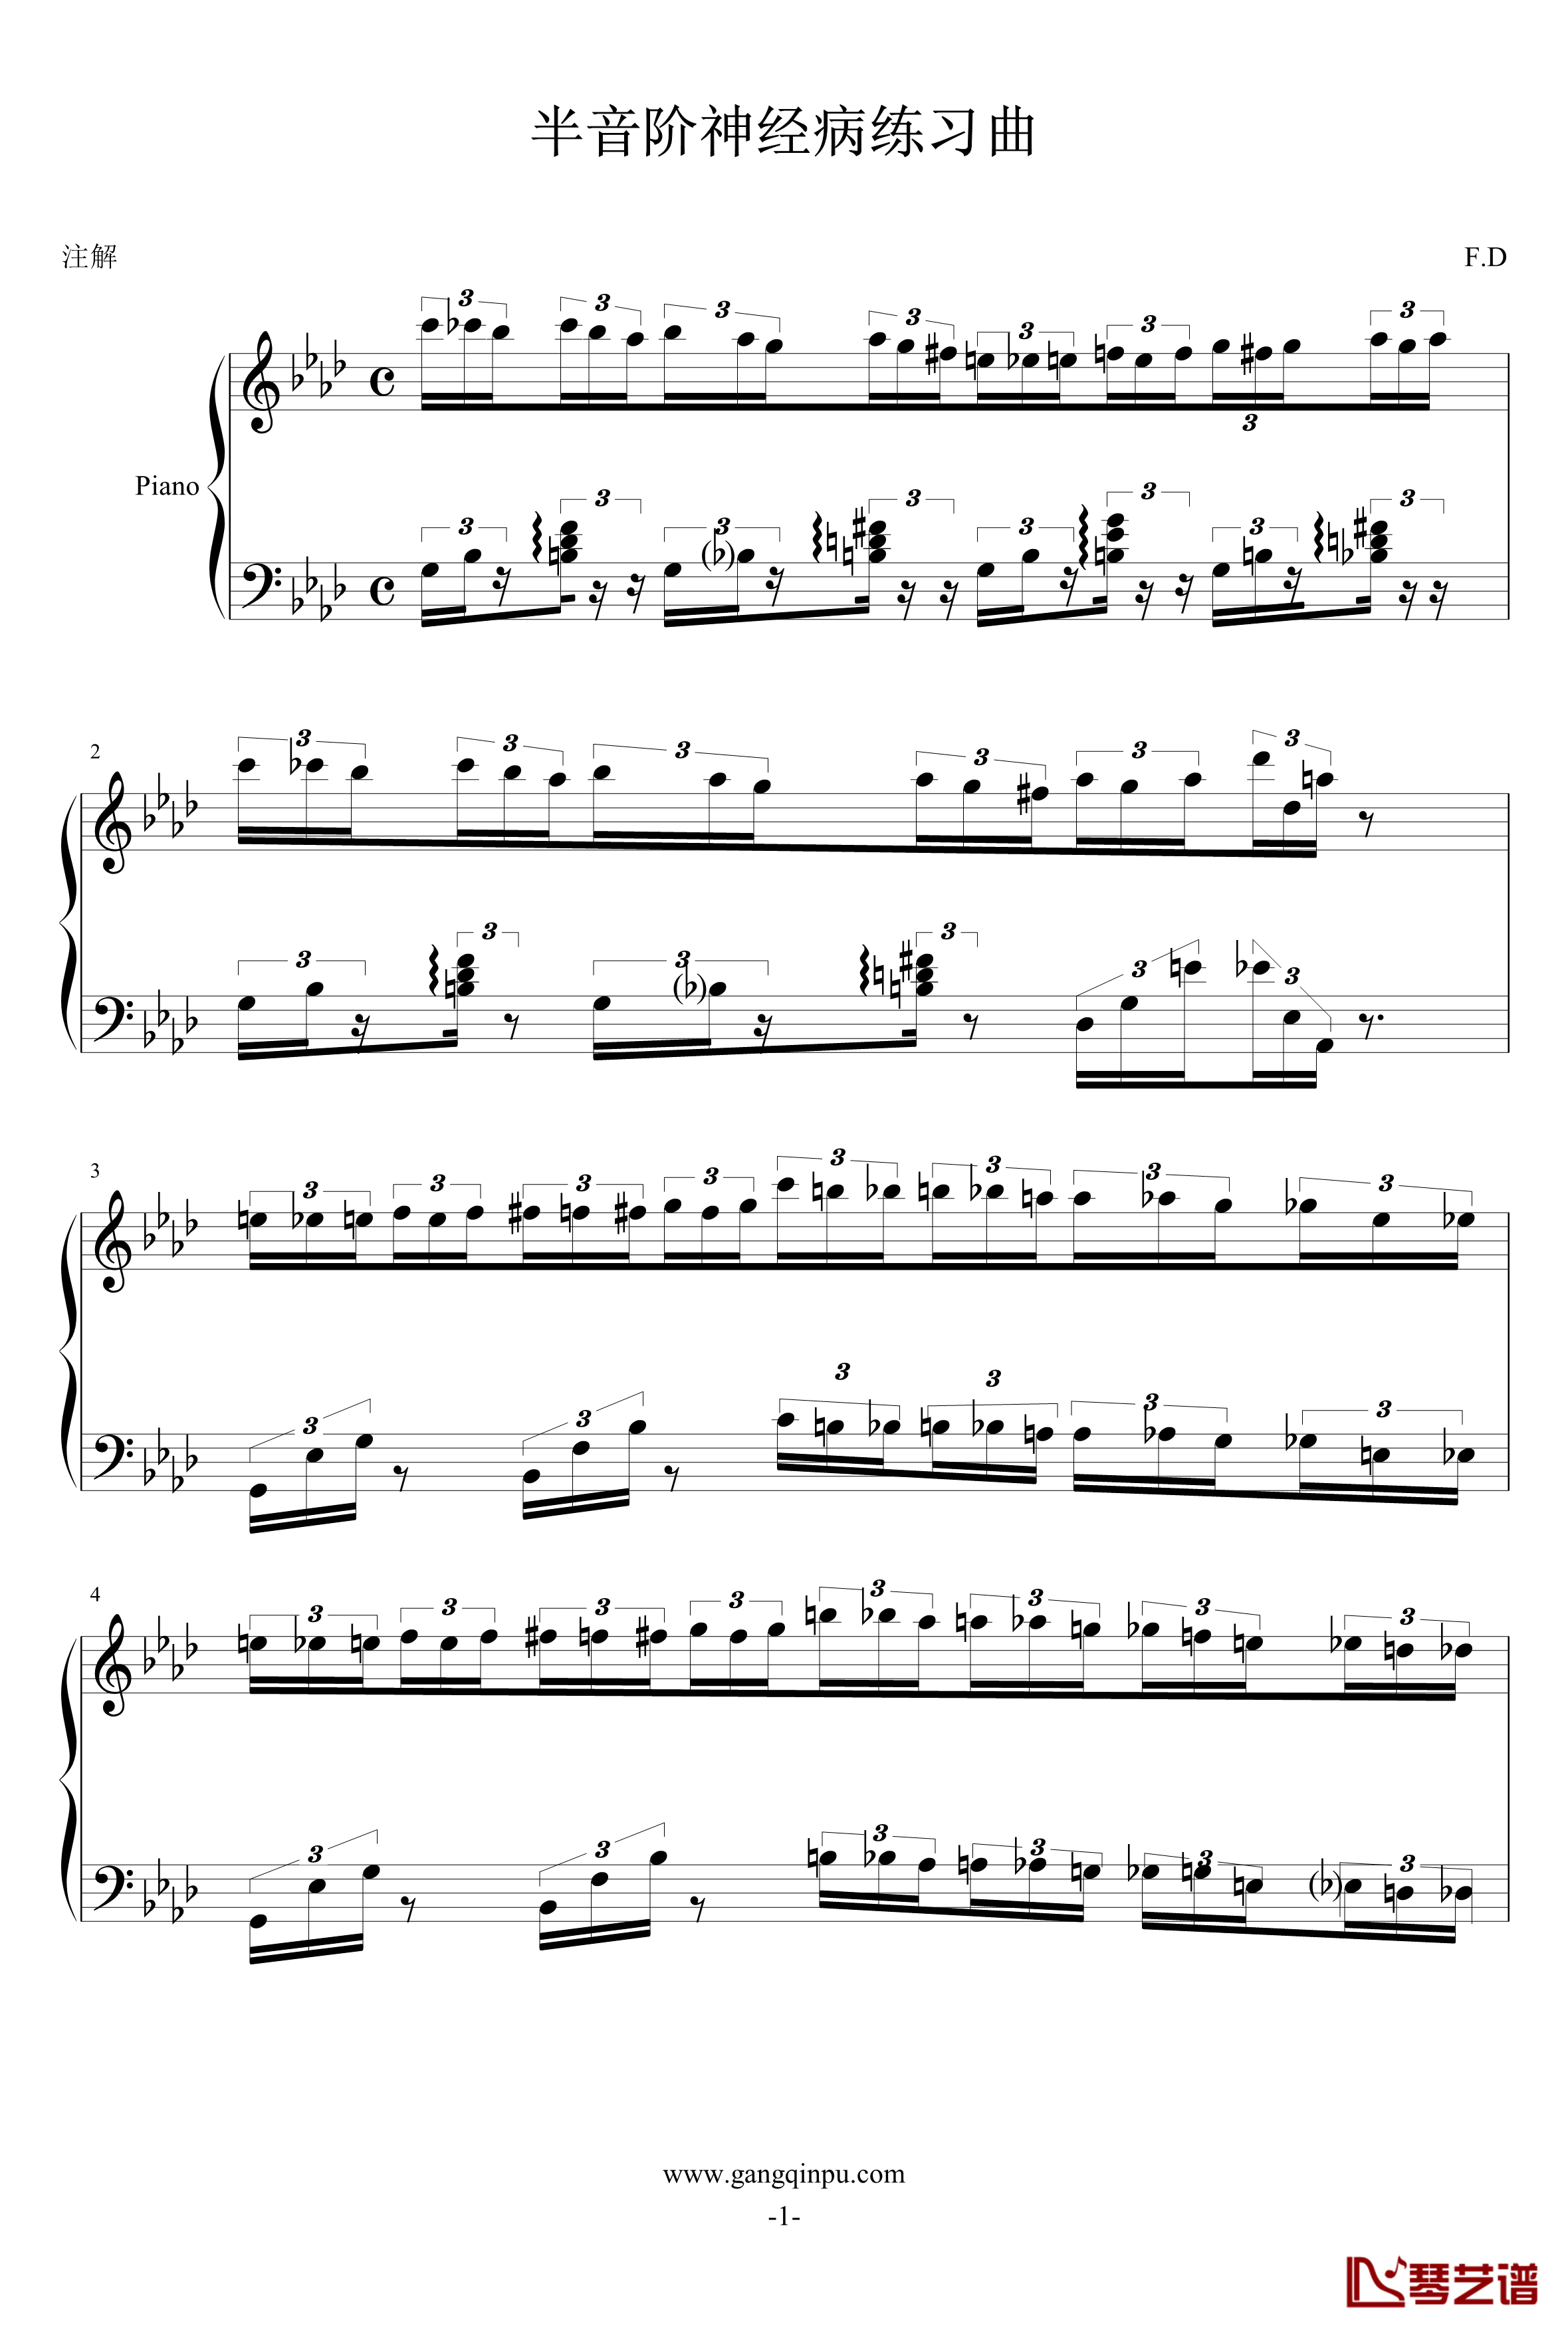 半音阶神经病练习曲钢琴谱-FangDong1